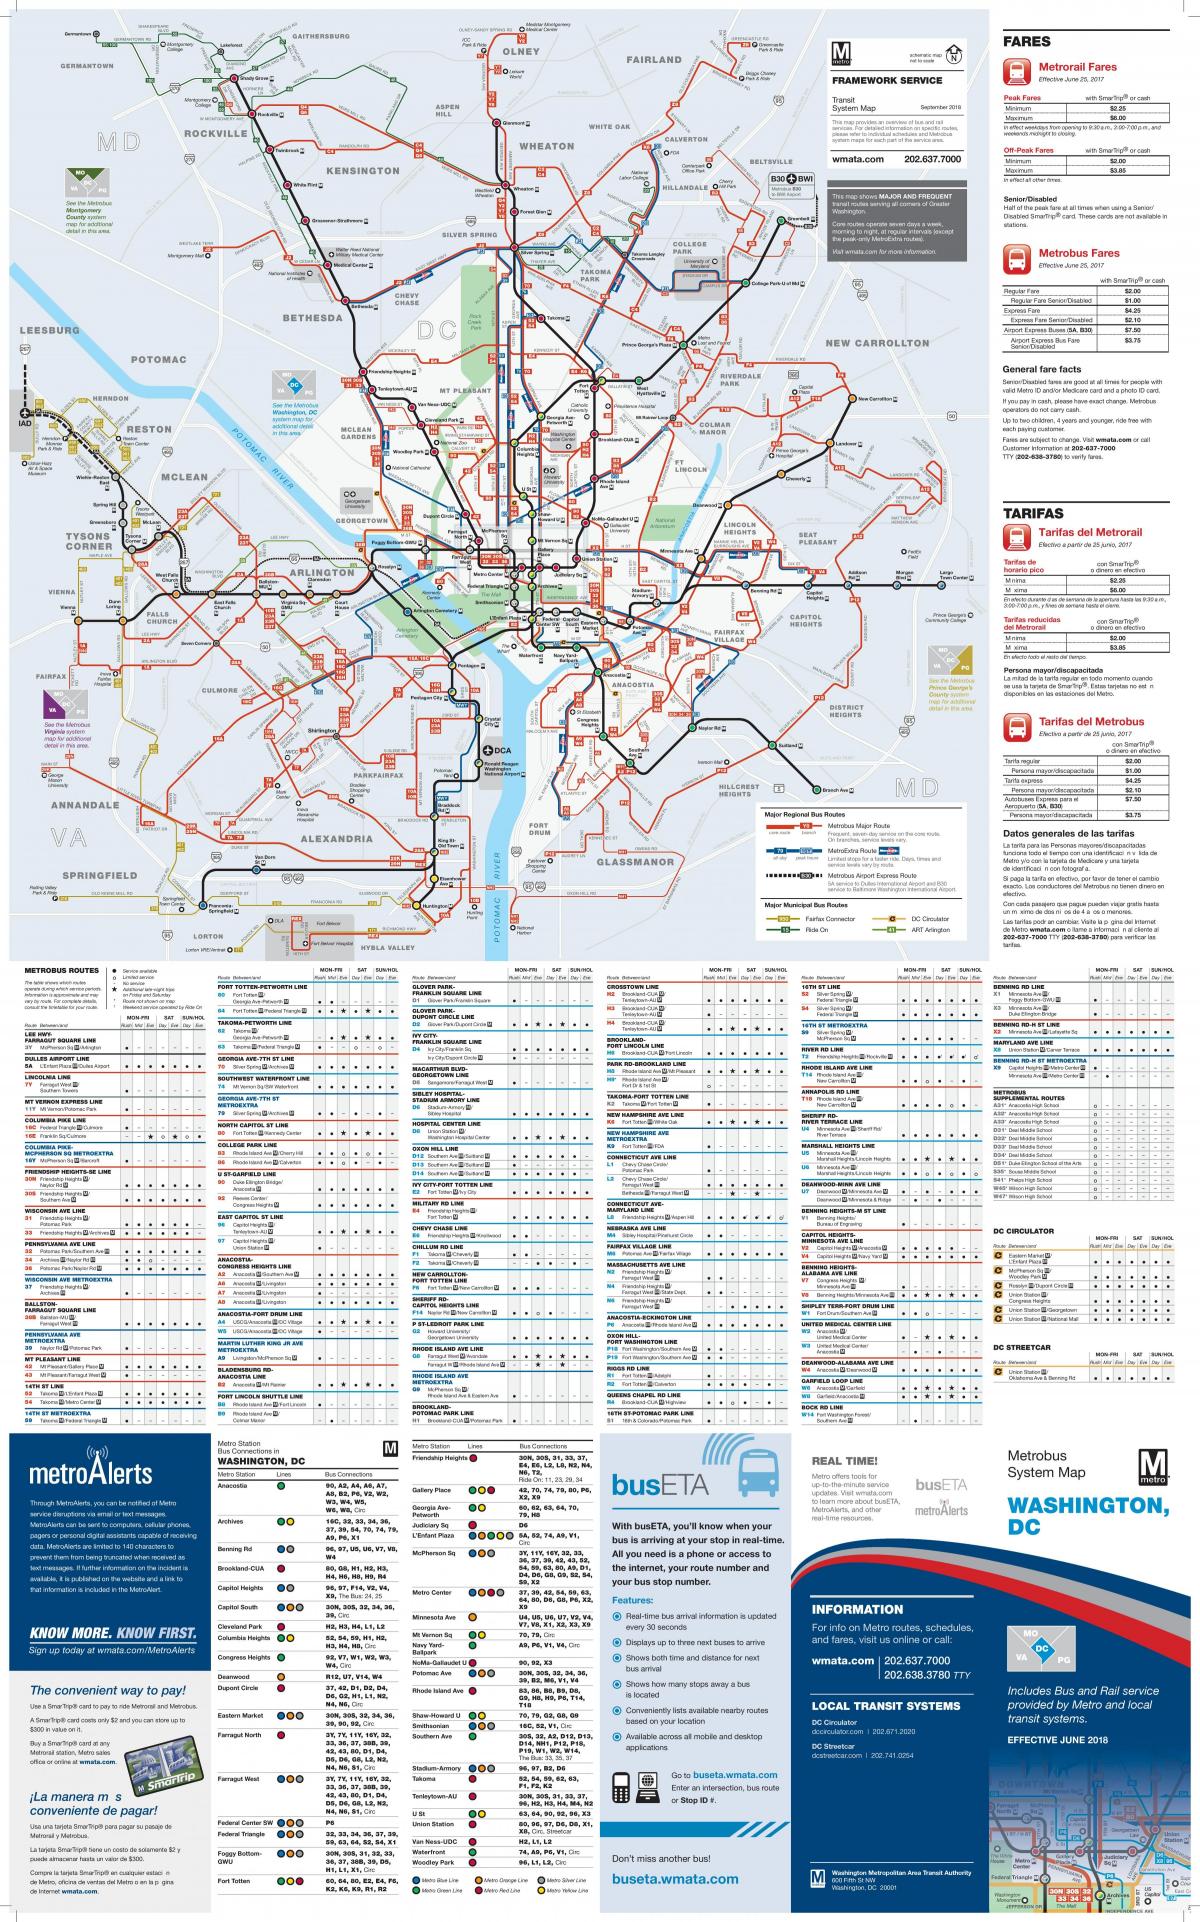 Mapa de la estación de autobuses de Washington DC